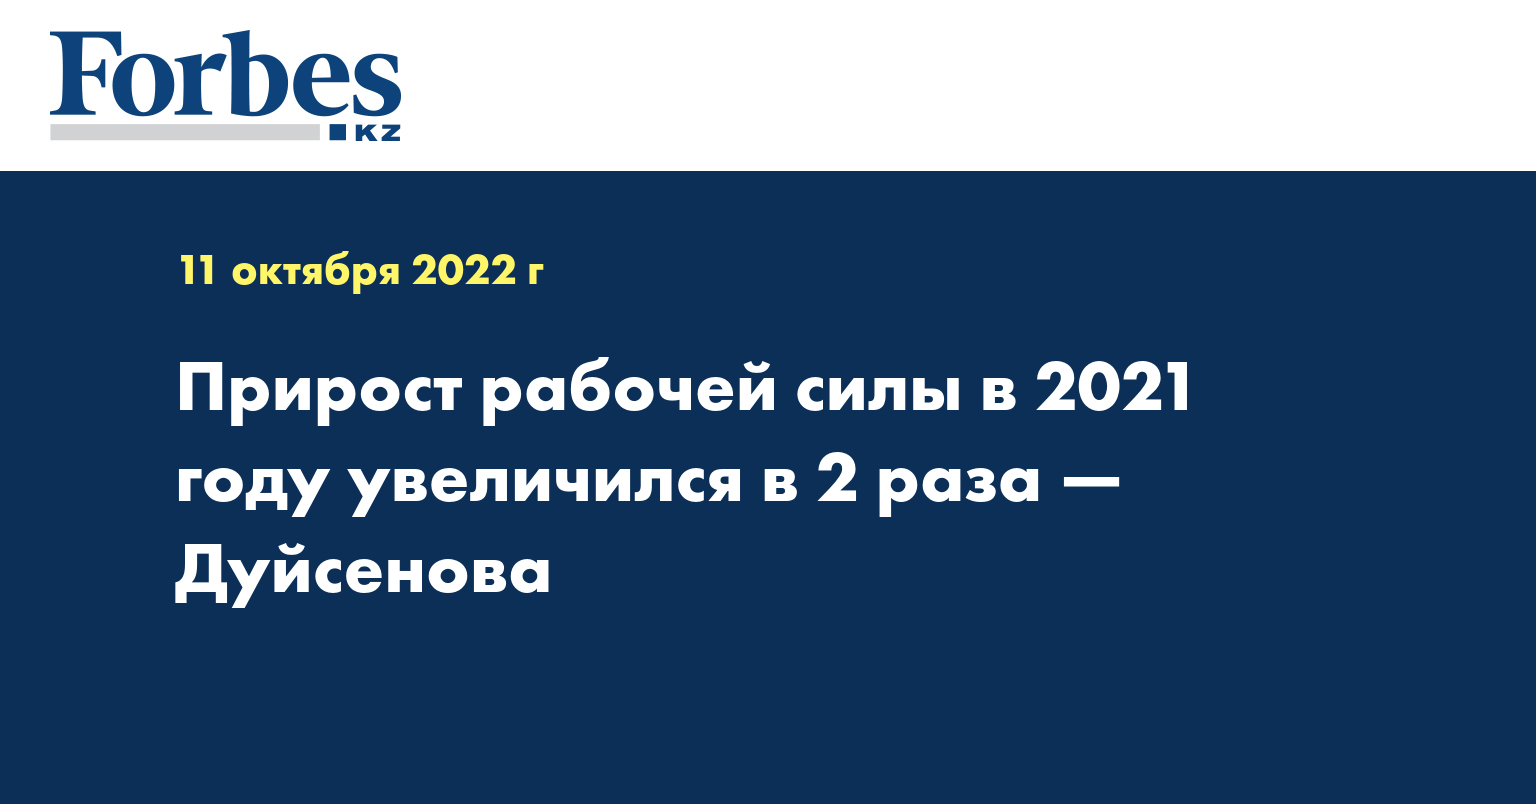 Прирост рабочей силы в 2021 году увеличился в 2 раза — Дуйсенова